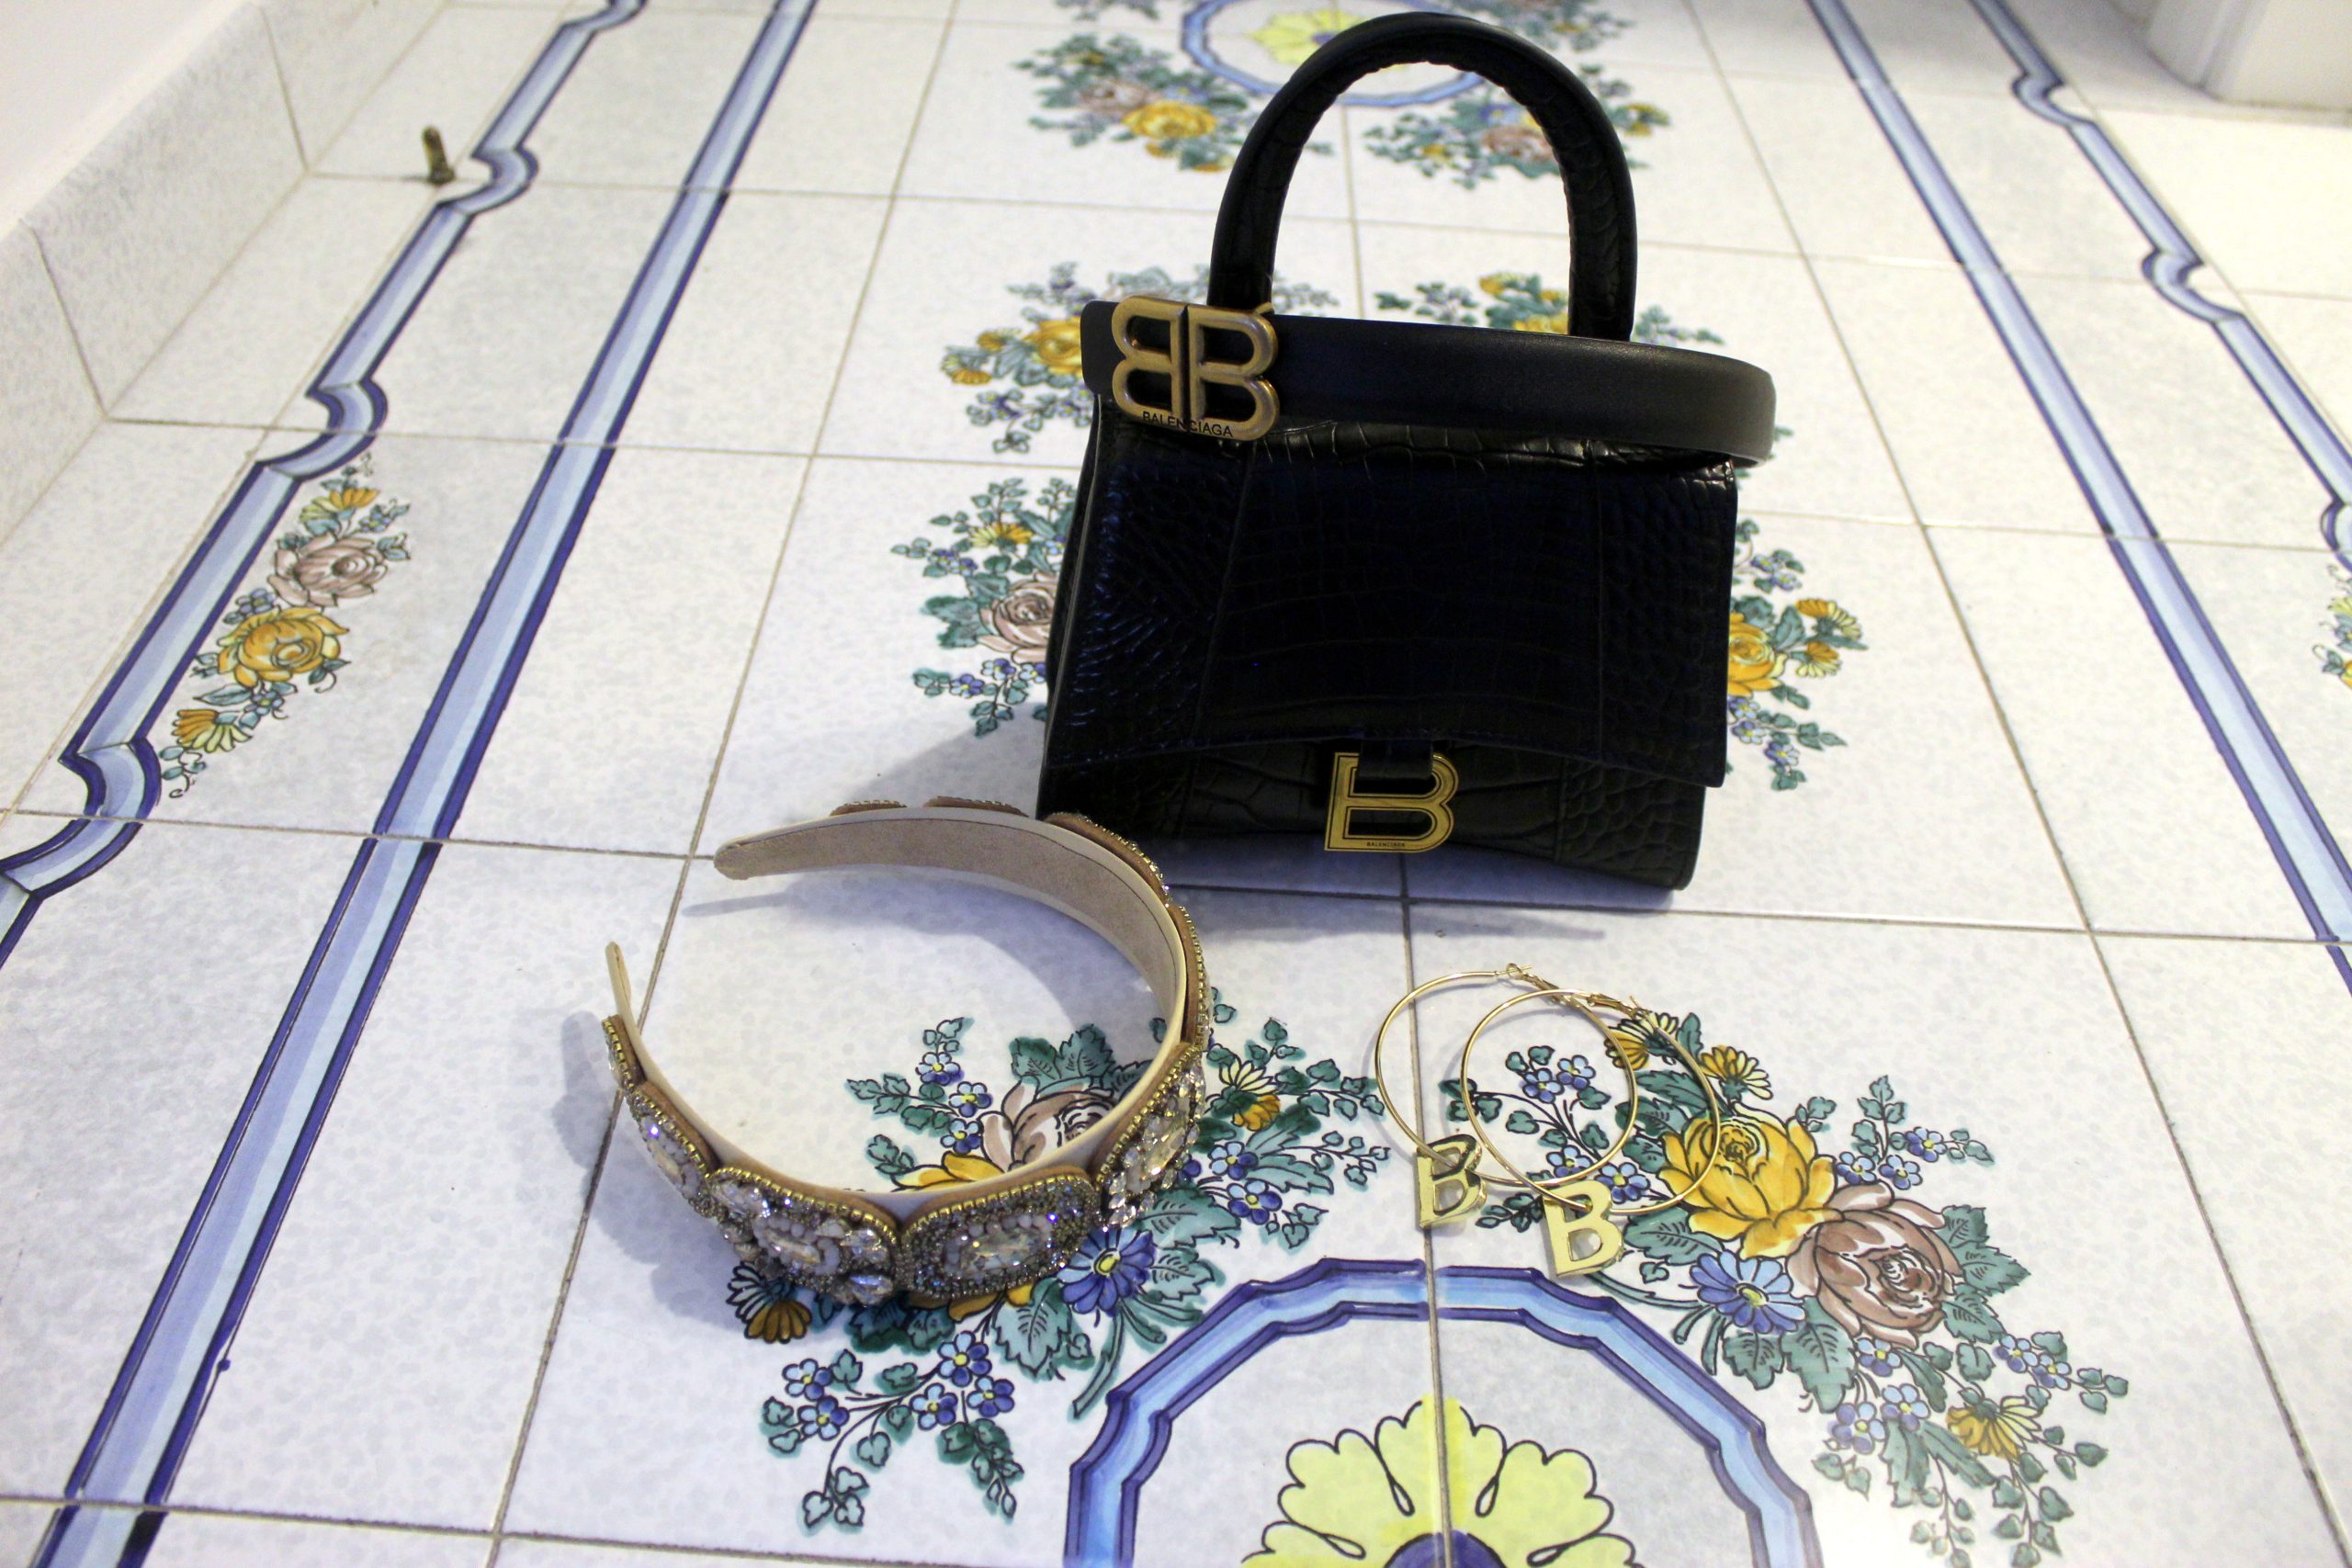 BALMAIN little black dress BALENCIAGA earrings, belt and bag BOTTEGA VENETA shoes Paola Lauretano Capri 